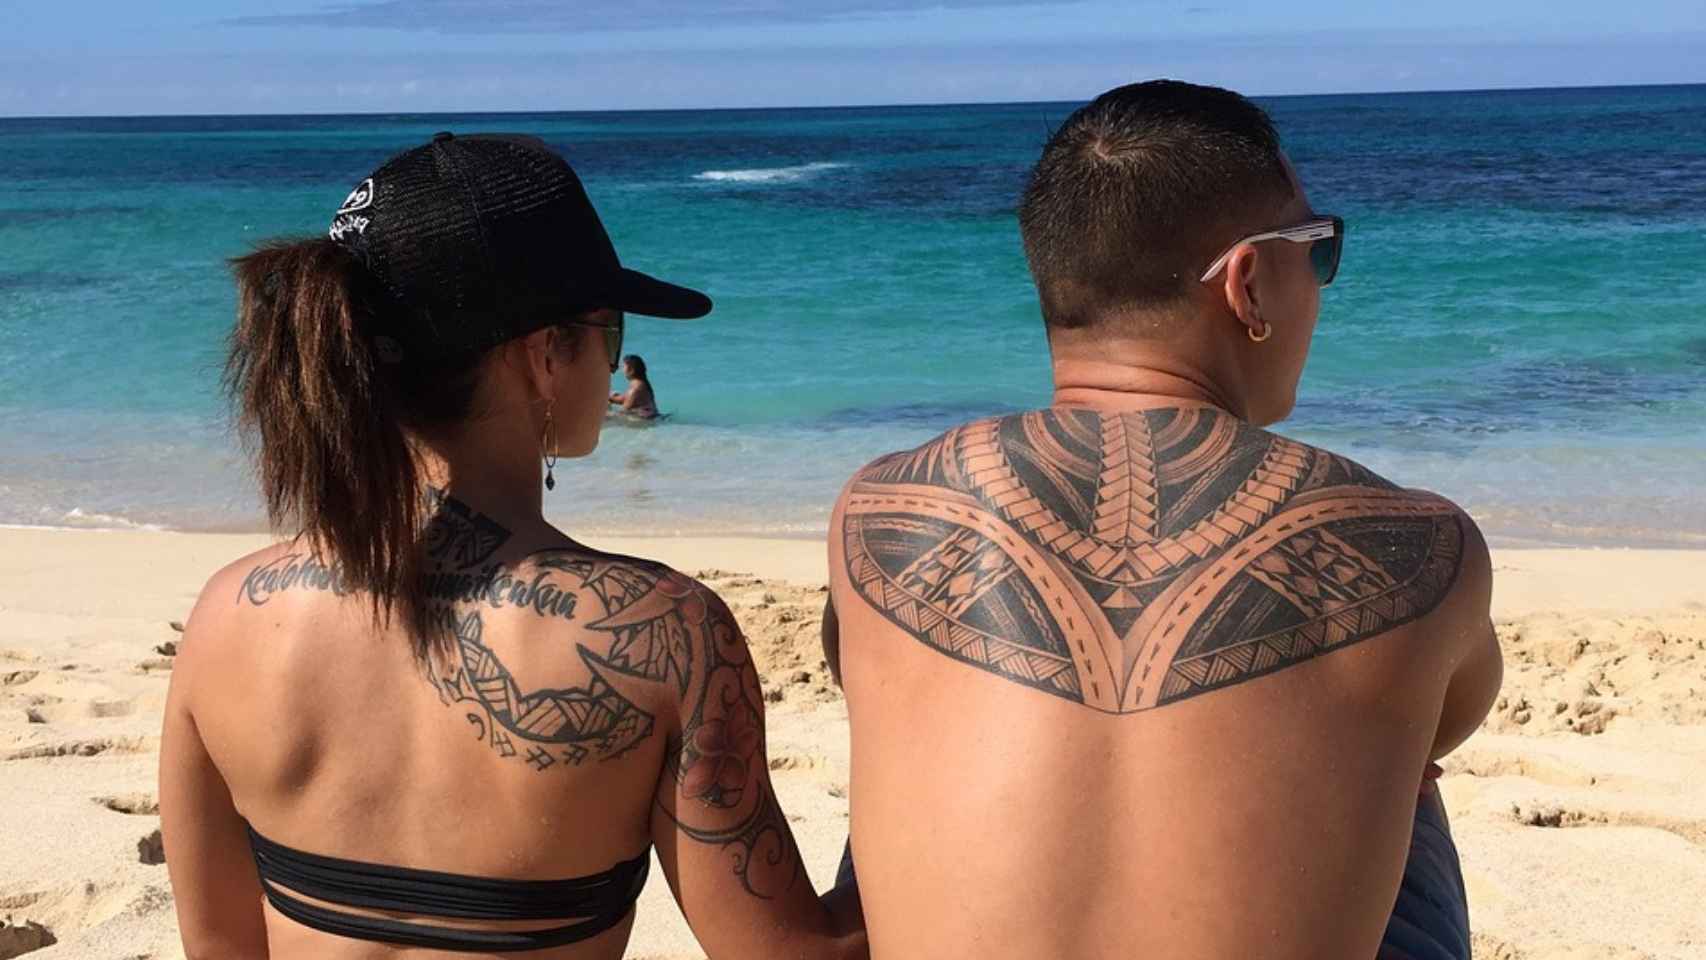 La crema solar no basta si tienes tatuajes, avisan los dermatólogos: "Se pueden inflamar 10 años después"